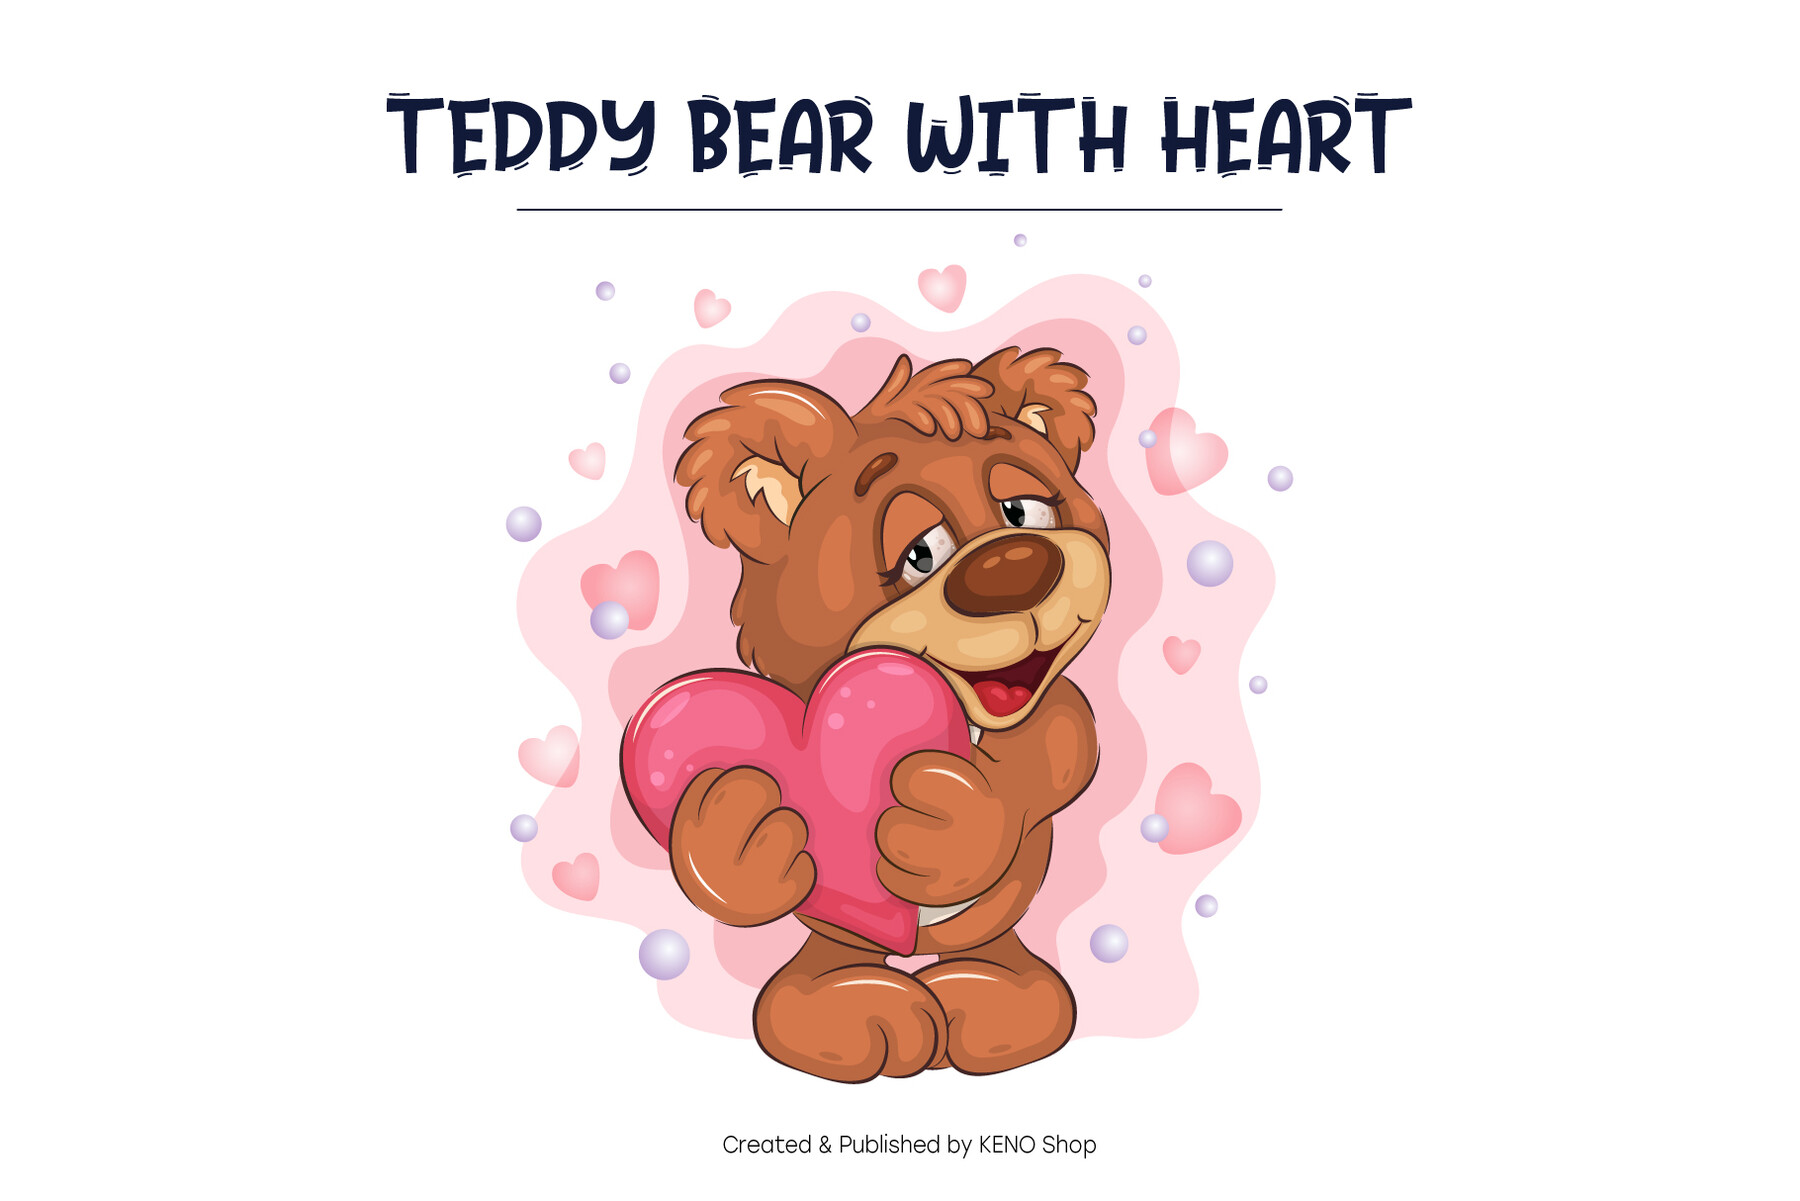 Cute Teddy Bear SVG PNG